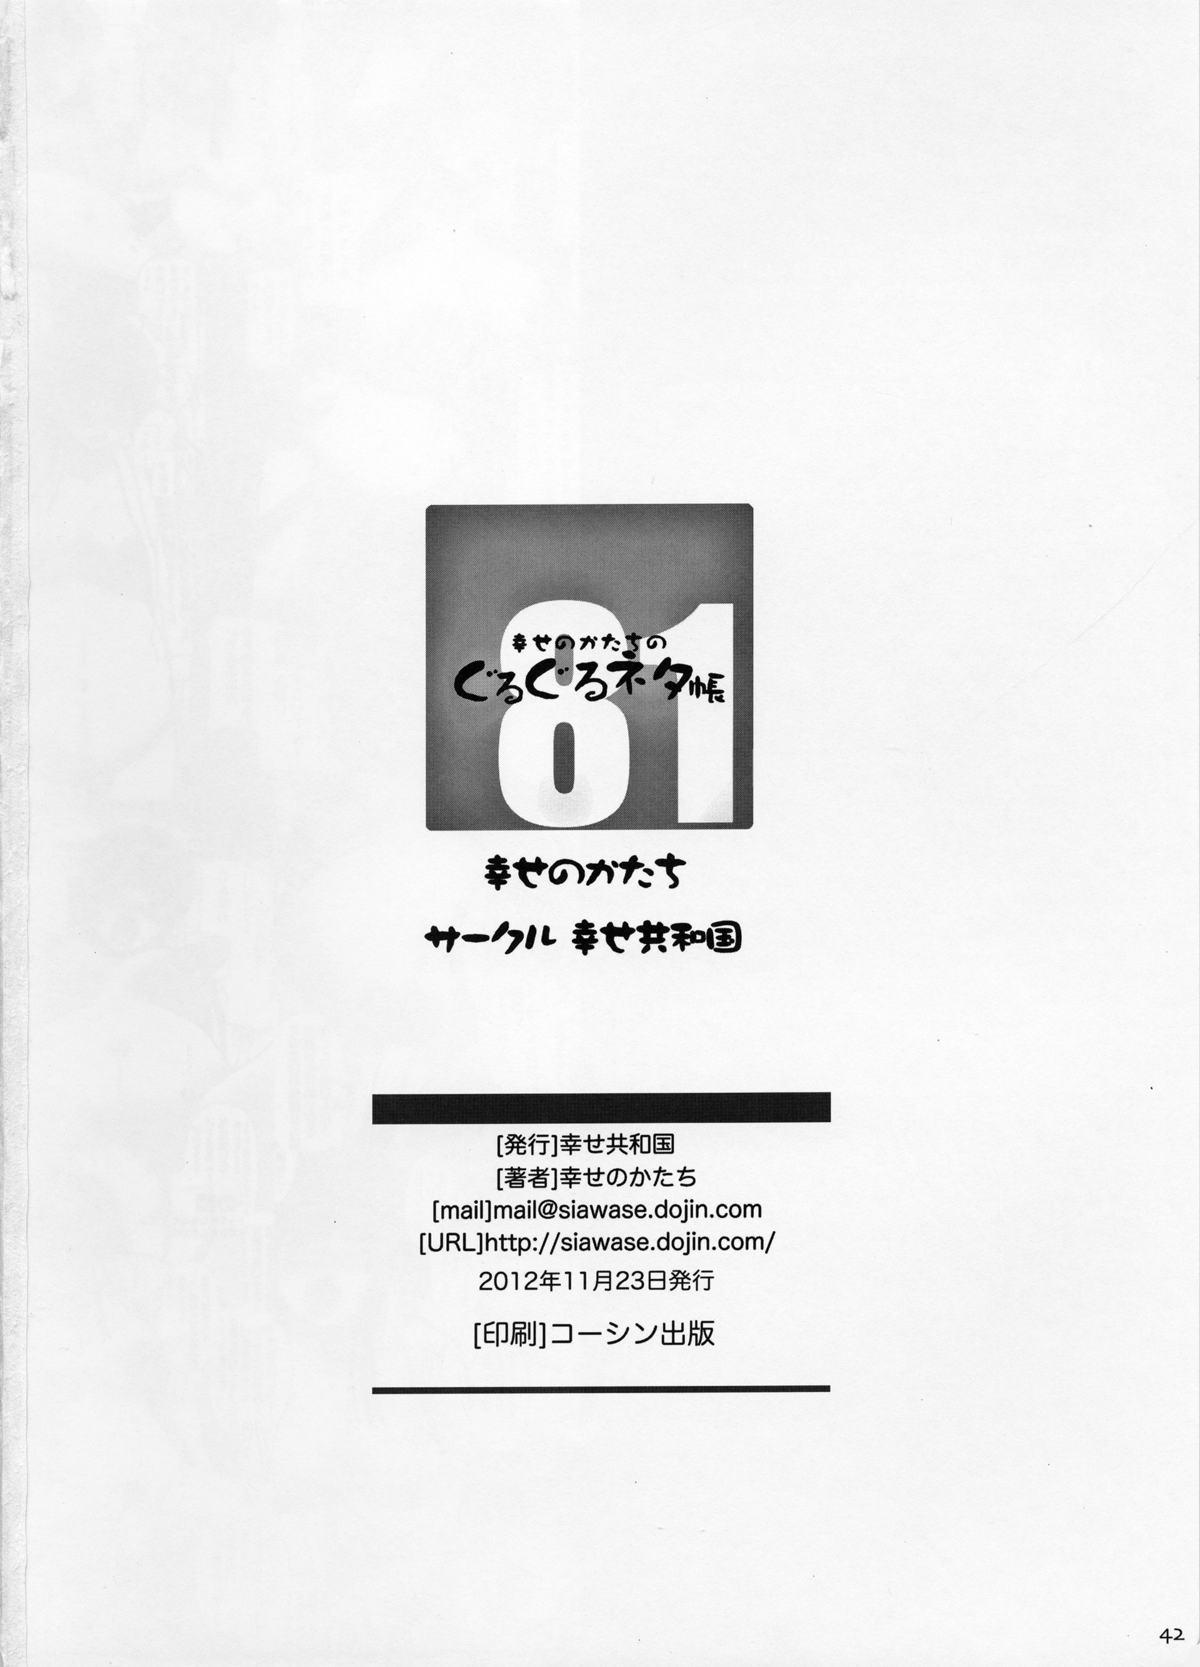 Gay Interracial Shiawase no Katachi no Guruguru Netachou 81 Anime - Page 41